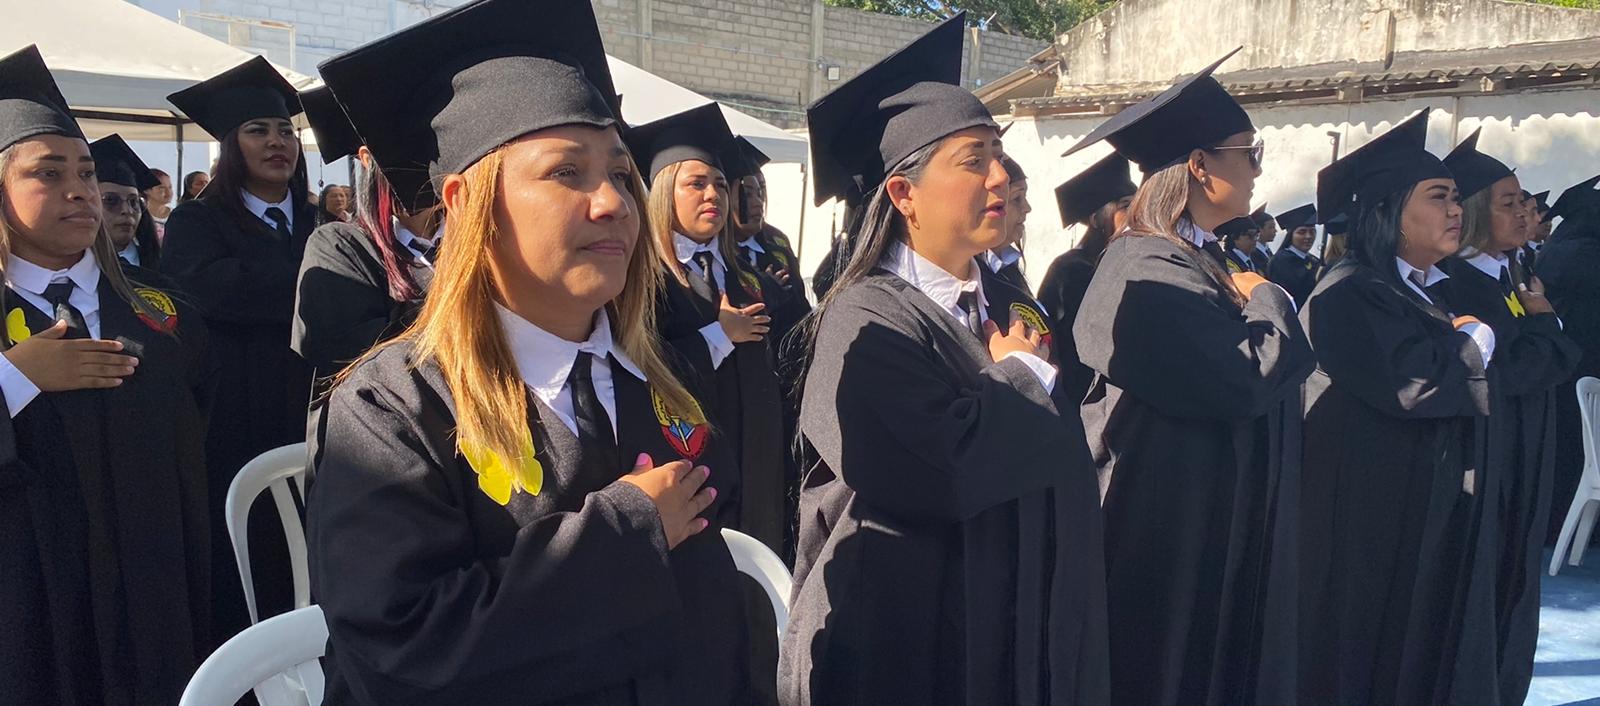 Algunas de las graduandas, felices en la ceremonia en El Buen Pastor